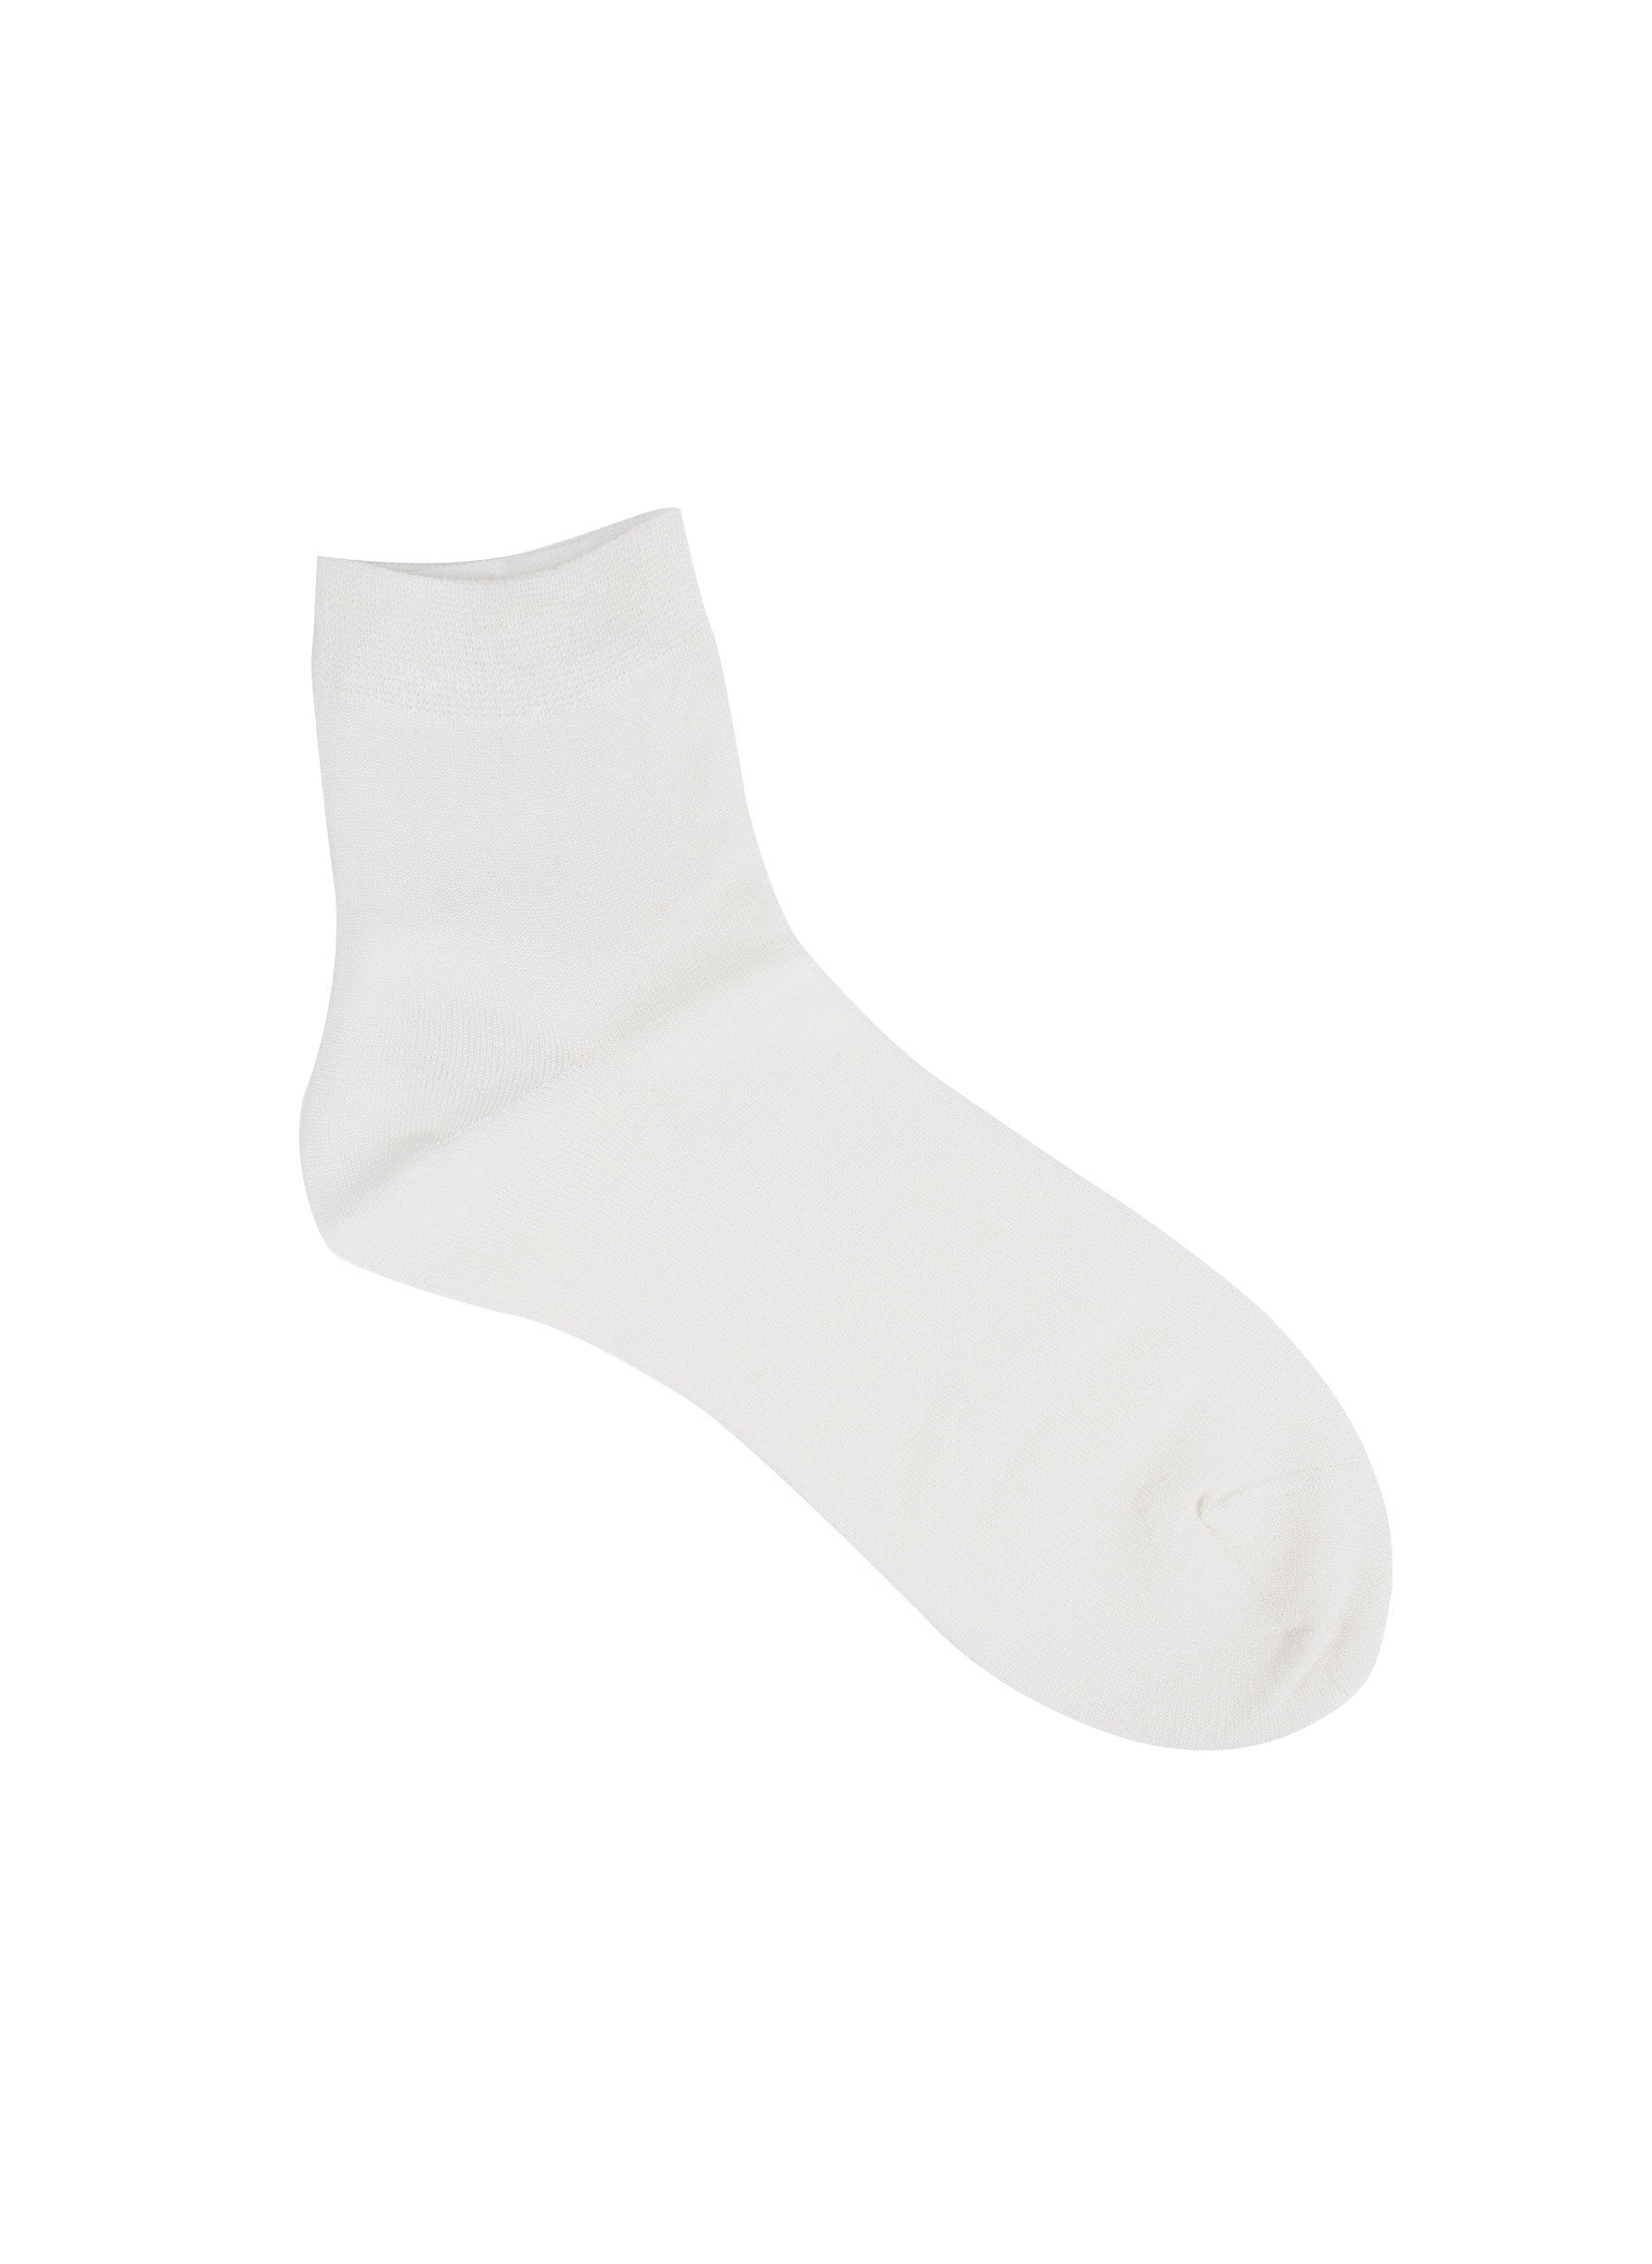 Silk socks white